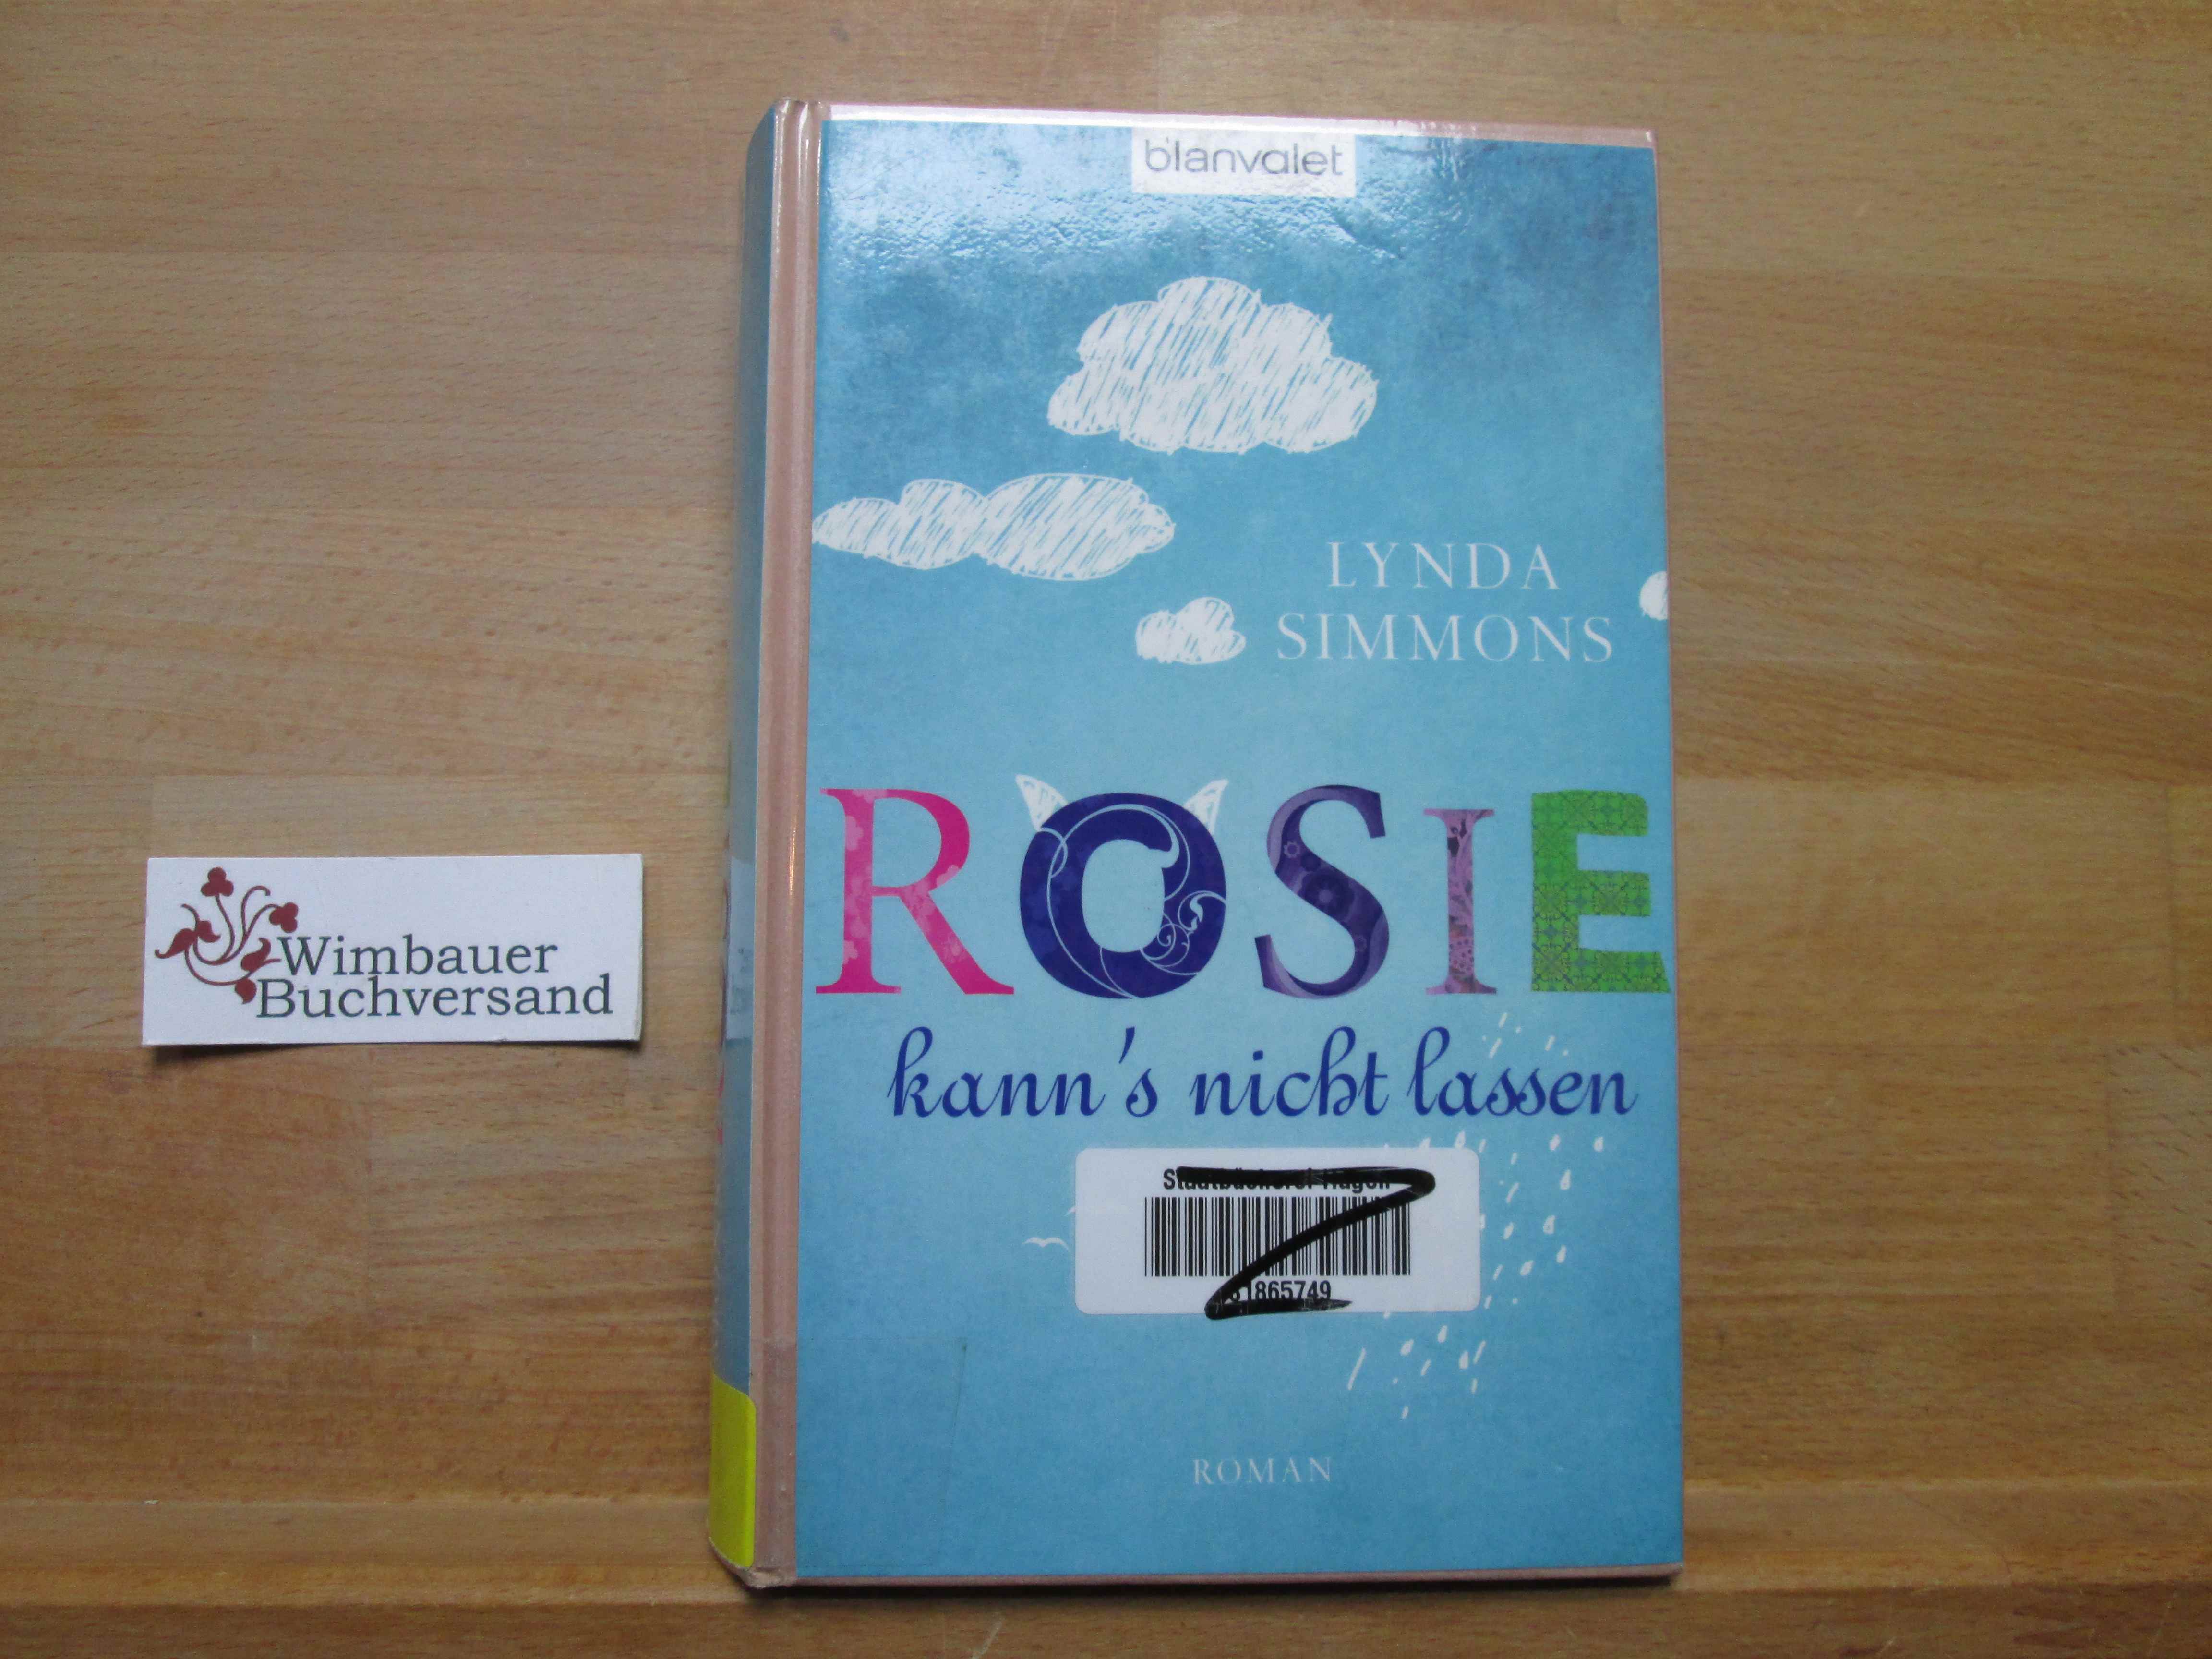 Rosie kann's nicht lassen : Roman. Lynda Simmons. Aus dem Engl. von Elfriede Peschel 1. Aufl. - Simmons, Lynda und Elfriede Peschel